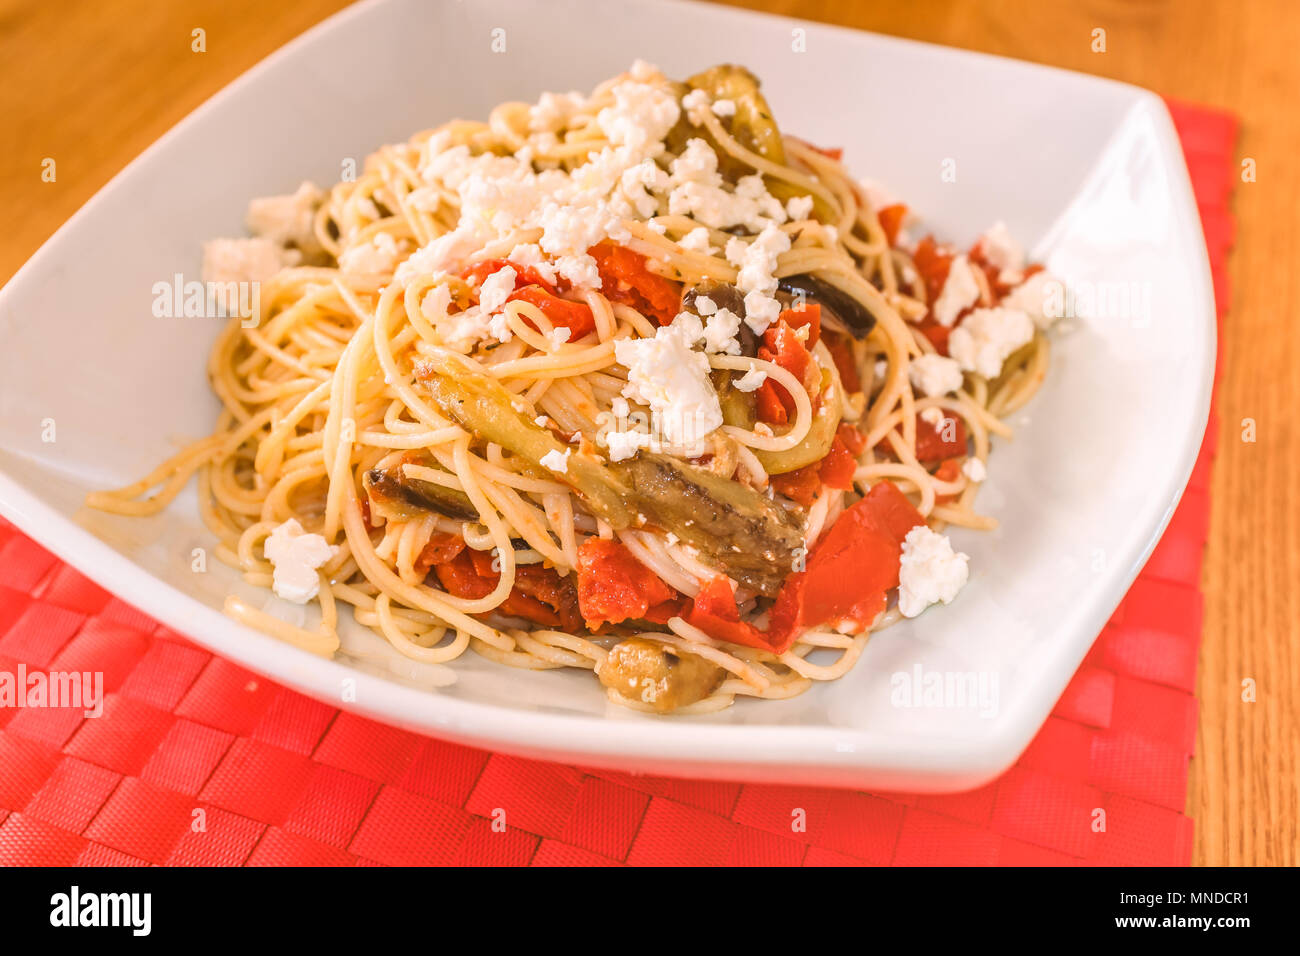 Un plat blanc sur un tapis rouge de la place avec un repas méditerranéen de spaghetti, fromage feta, aubergines (aubergine et tomate) Banque D'Images